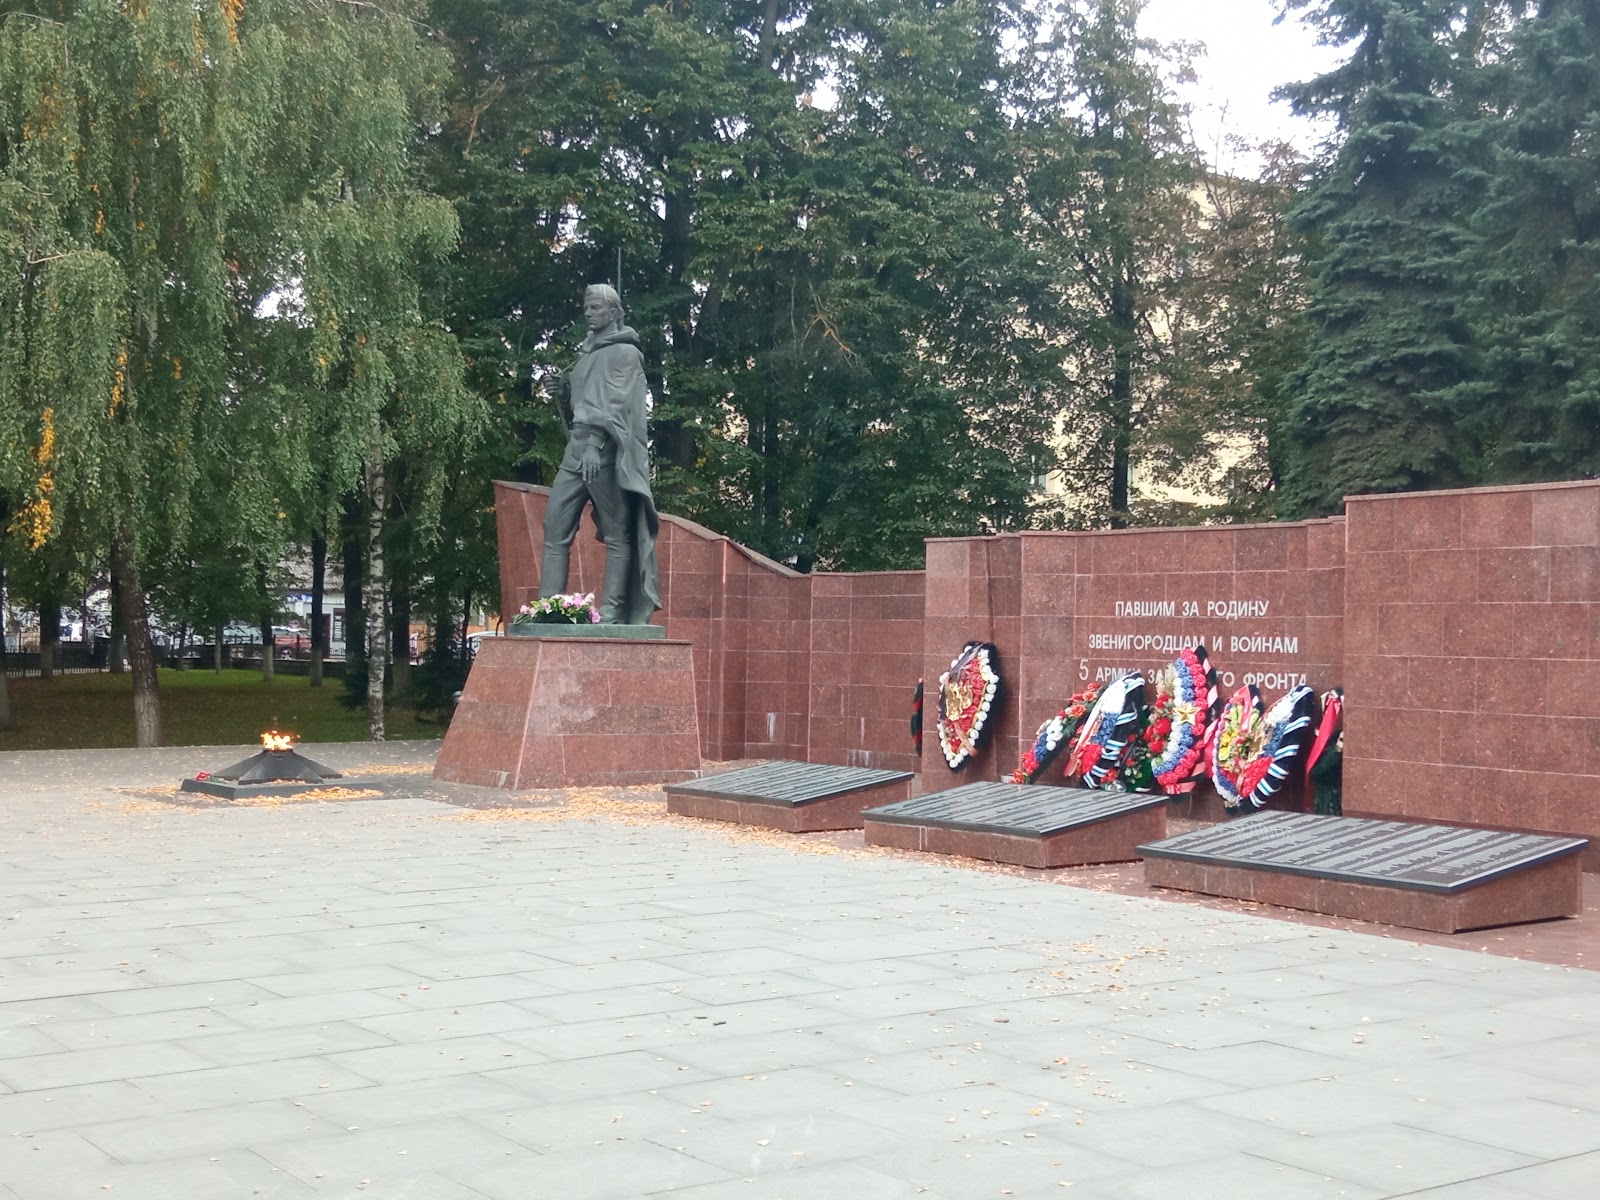 Memorial'nyy Kompleks Pavshim Za Rodinu Zvenigorodtsam V Gody Velikoy Otechestvennoy Voyny